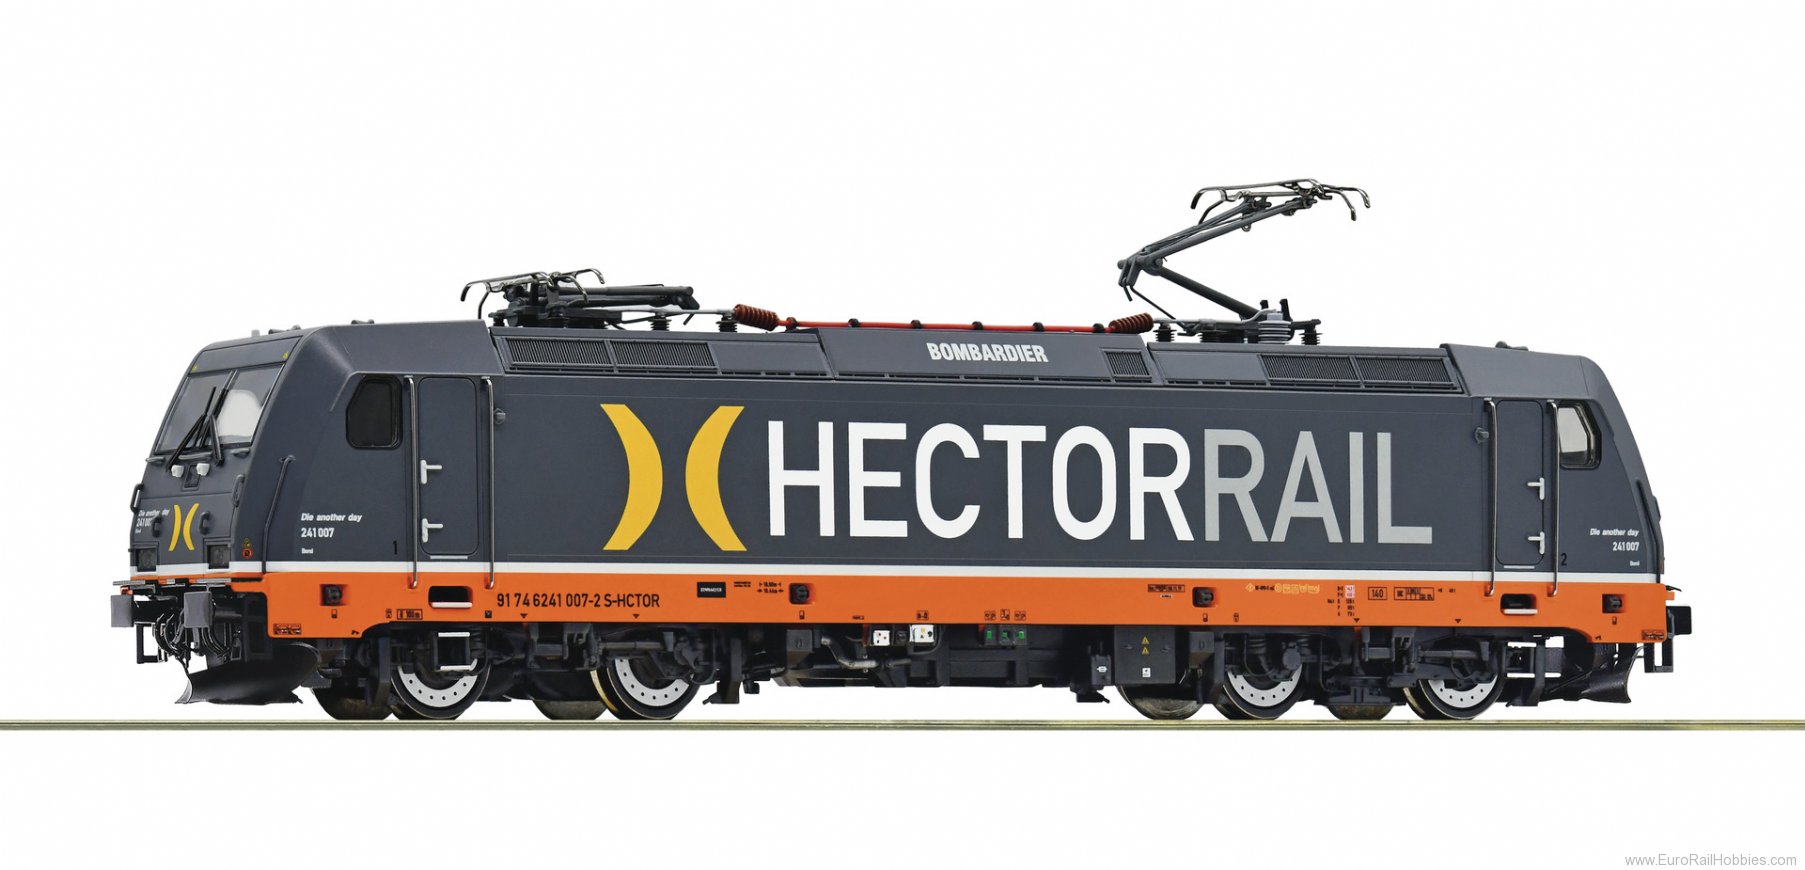 Roco 79948 Hectorrail Electric locomotive 241 007-2 (Mar